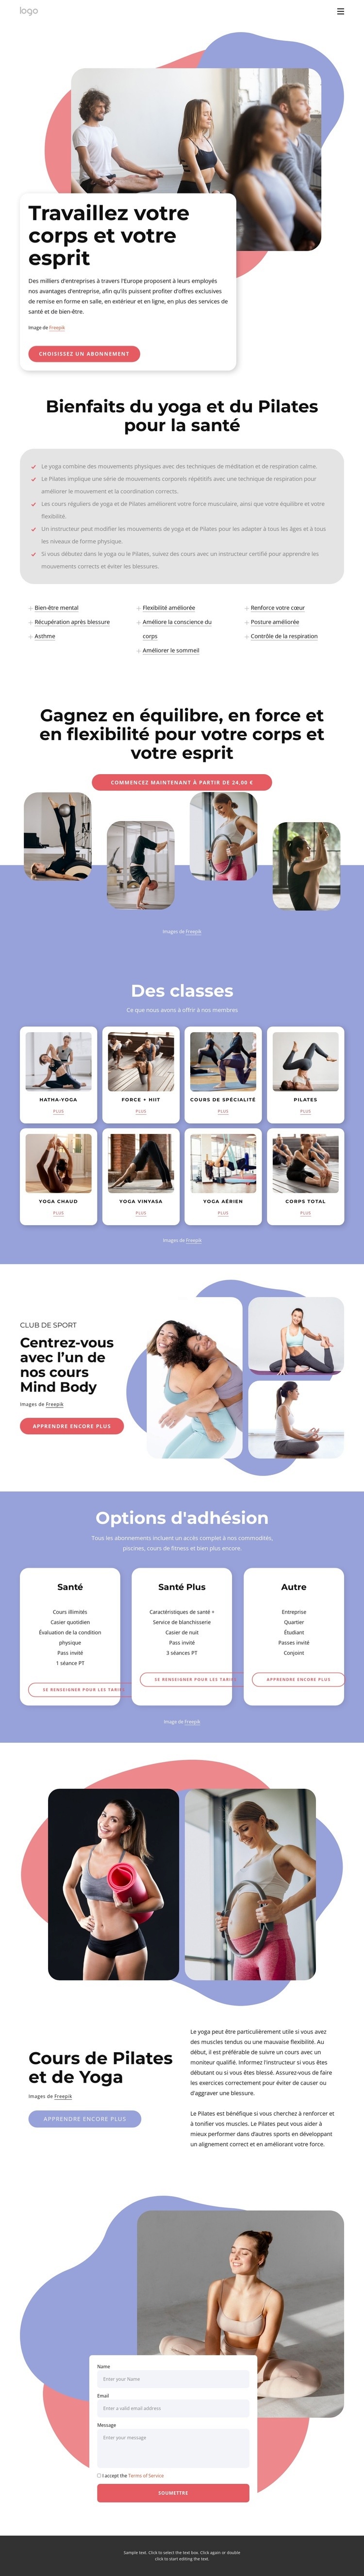 Cours de Pilates et de yoga Modèles de constructeur de sites Web